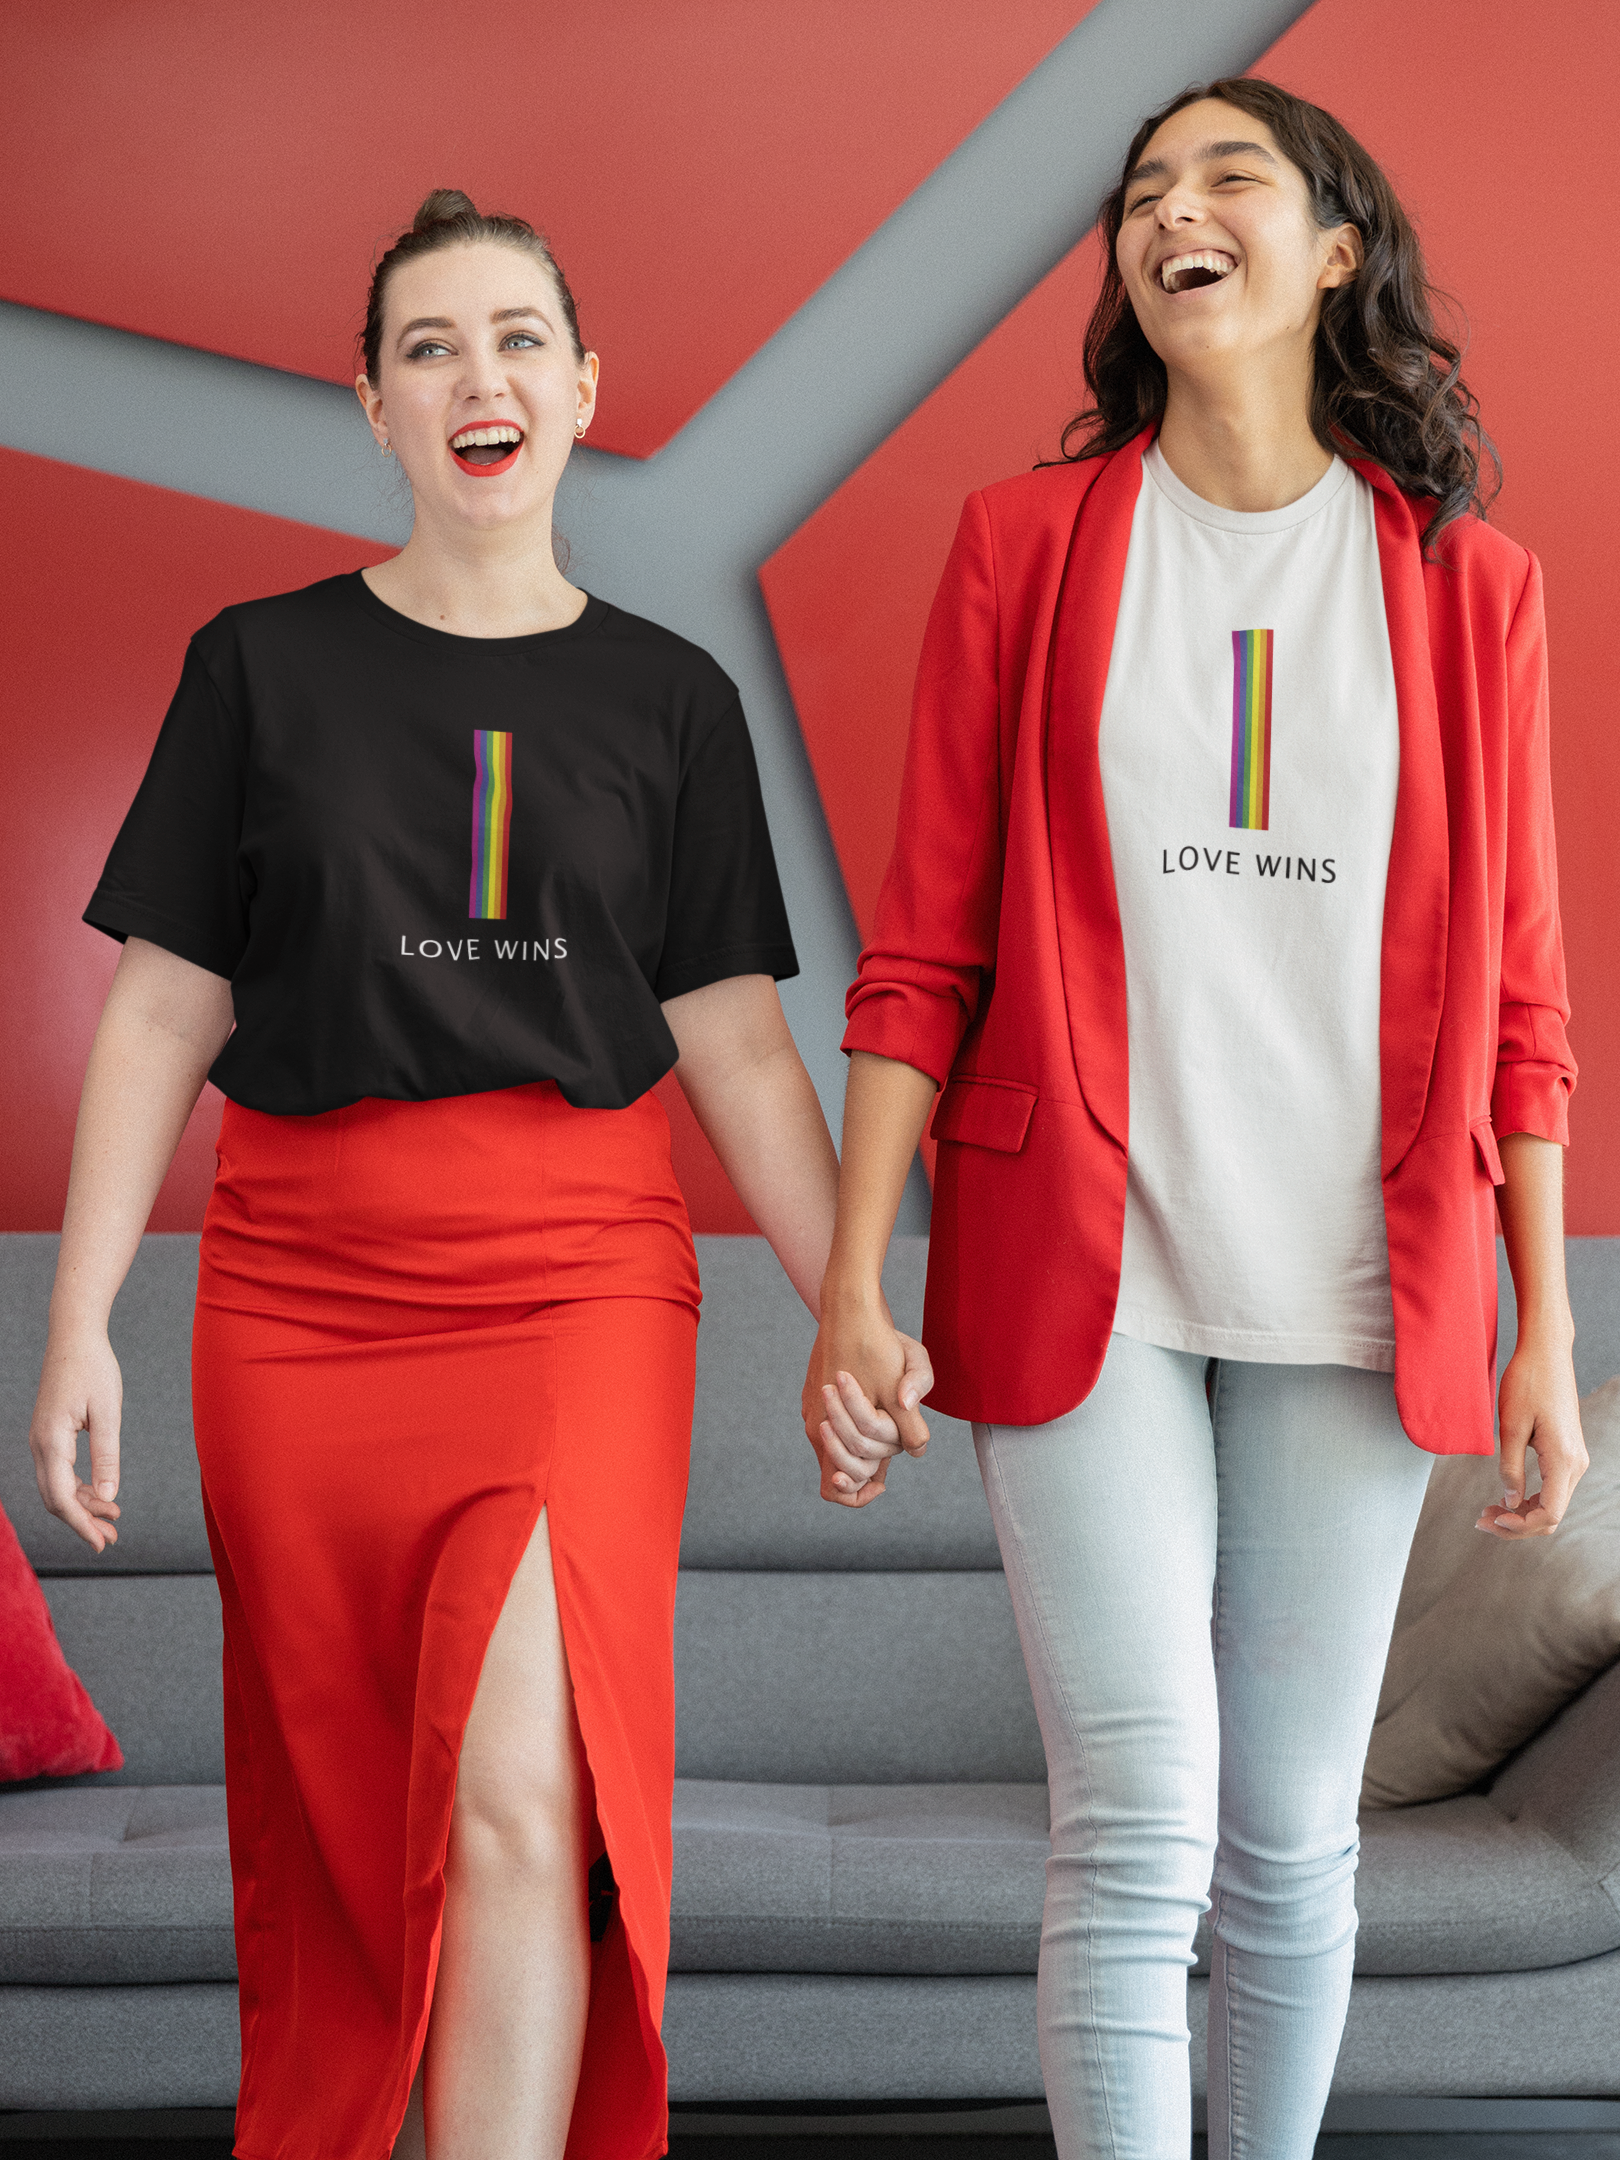 Love Wins : Women's 100% Cotton T-Shirt